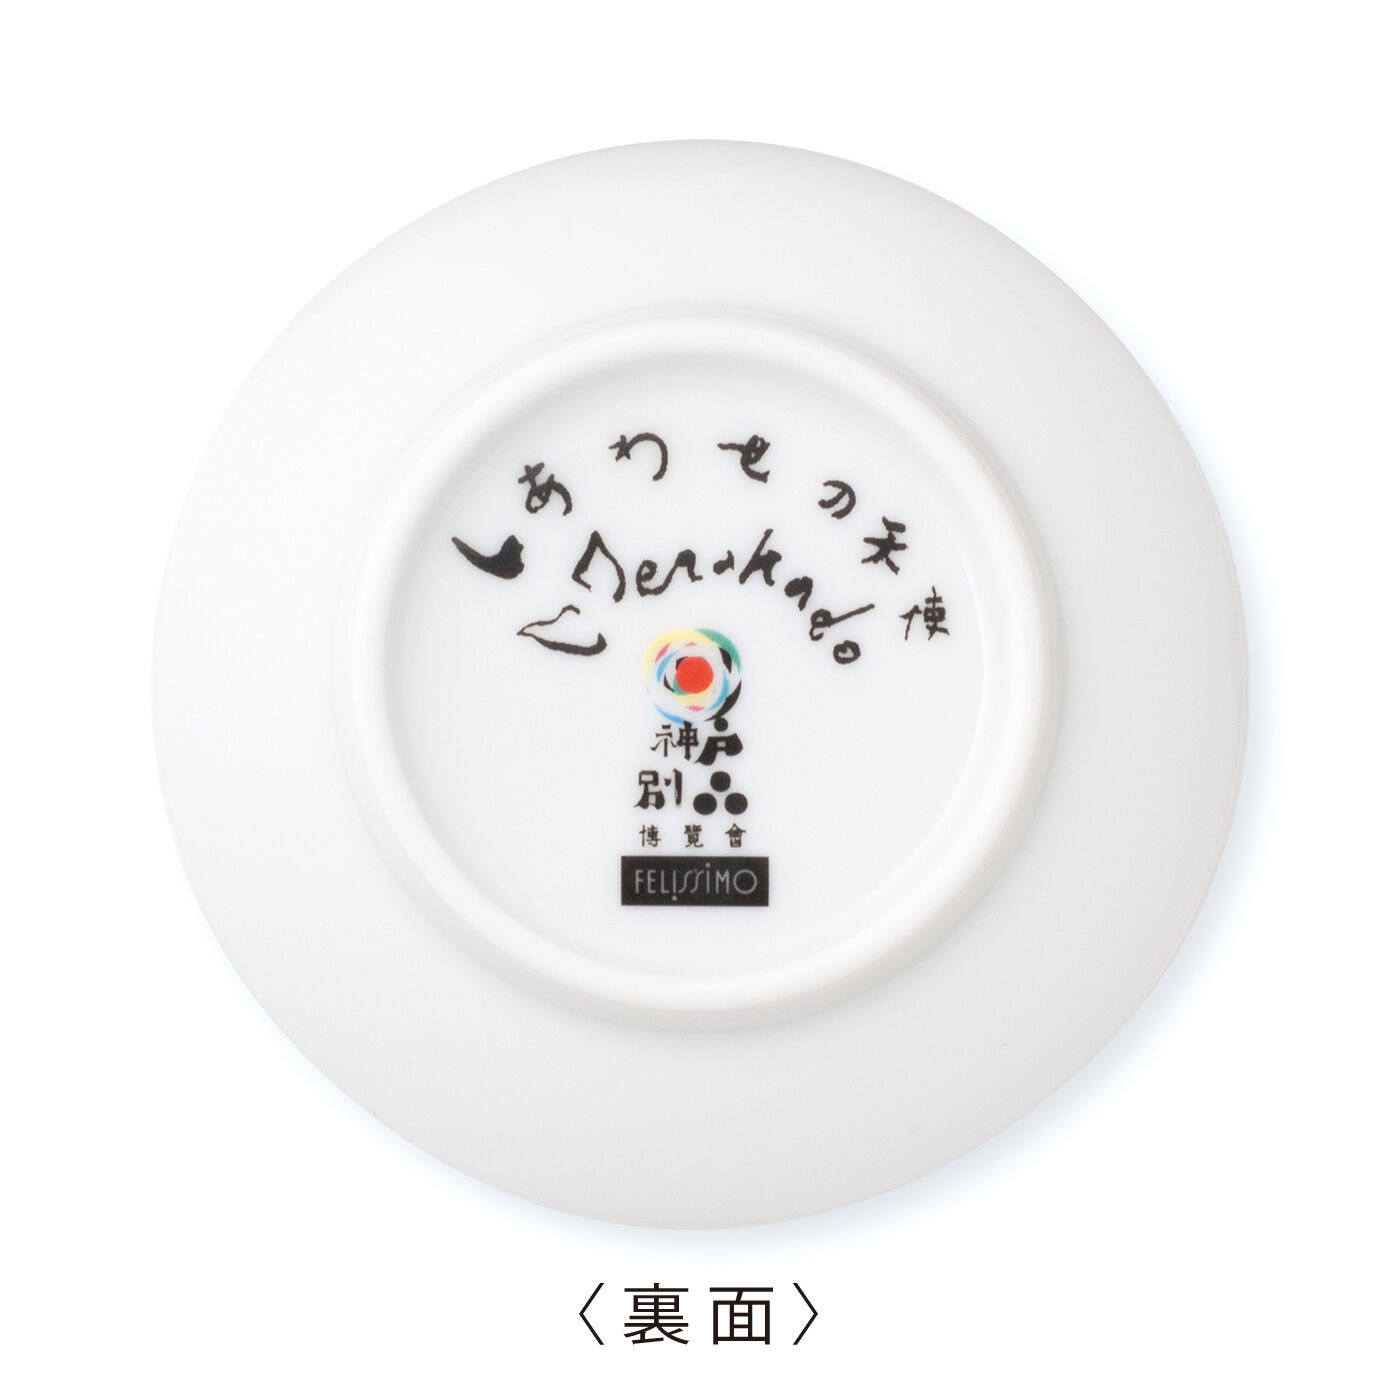 WEB限定お買い得商品|21の天使の豆皿|寺門さん自筆の天使のなまえとサイン、別品博覧会のロゴプリント入り。